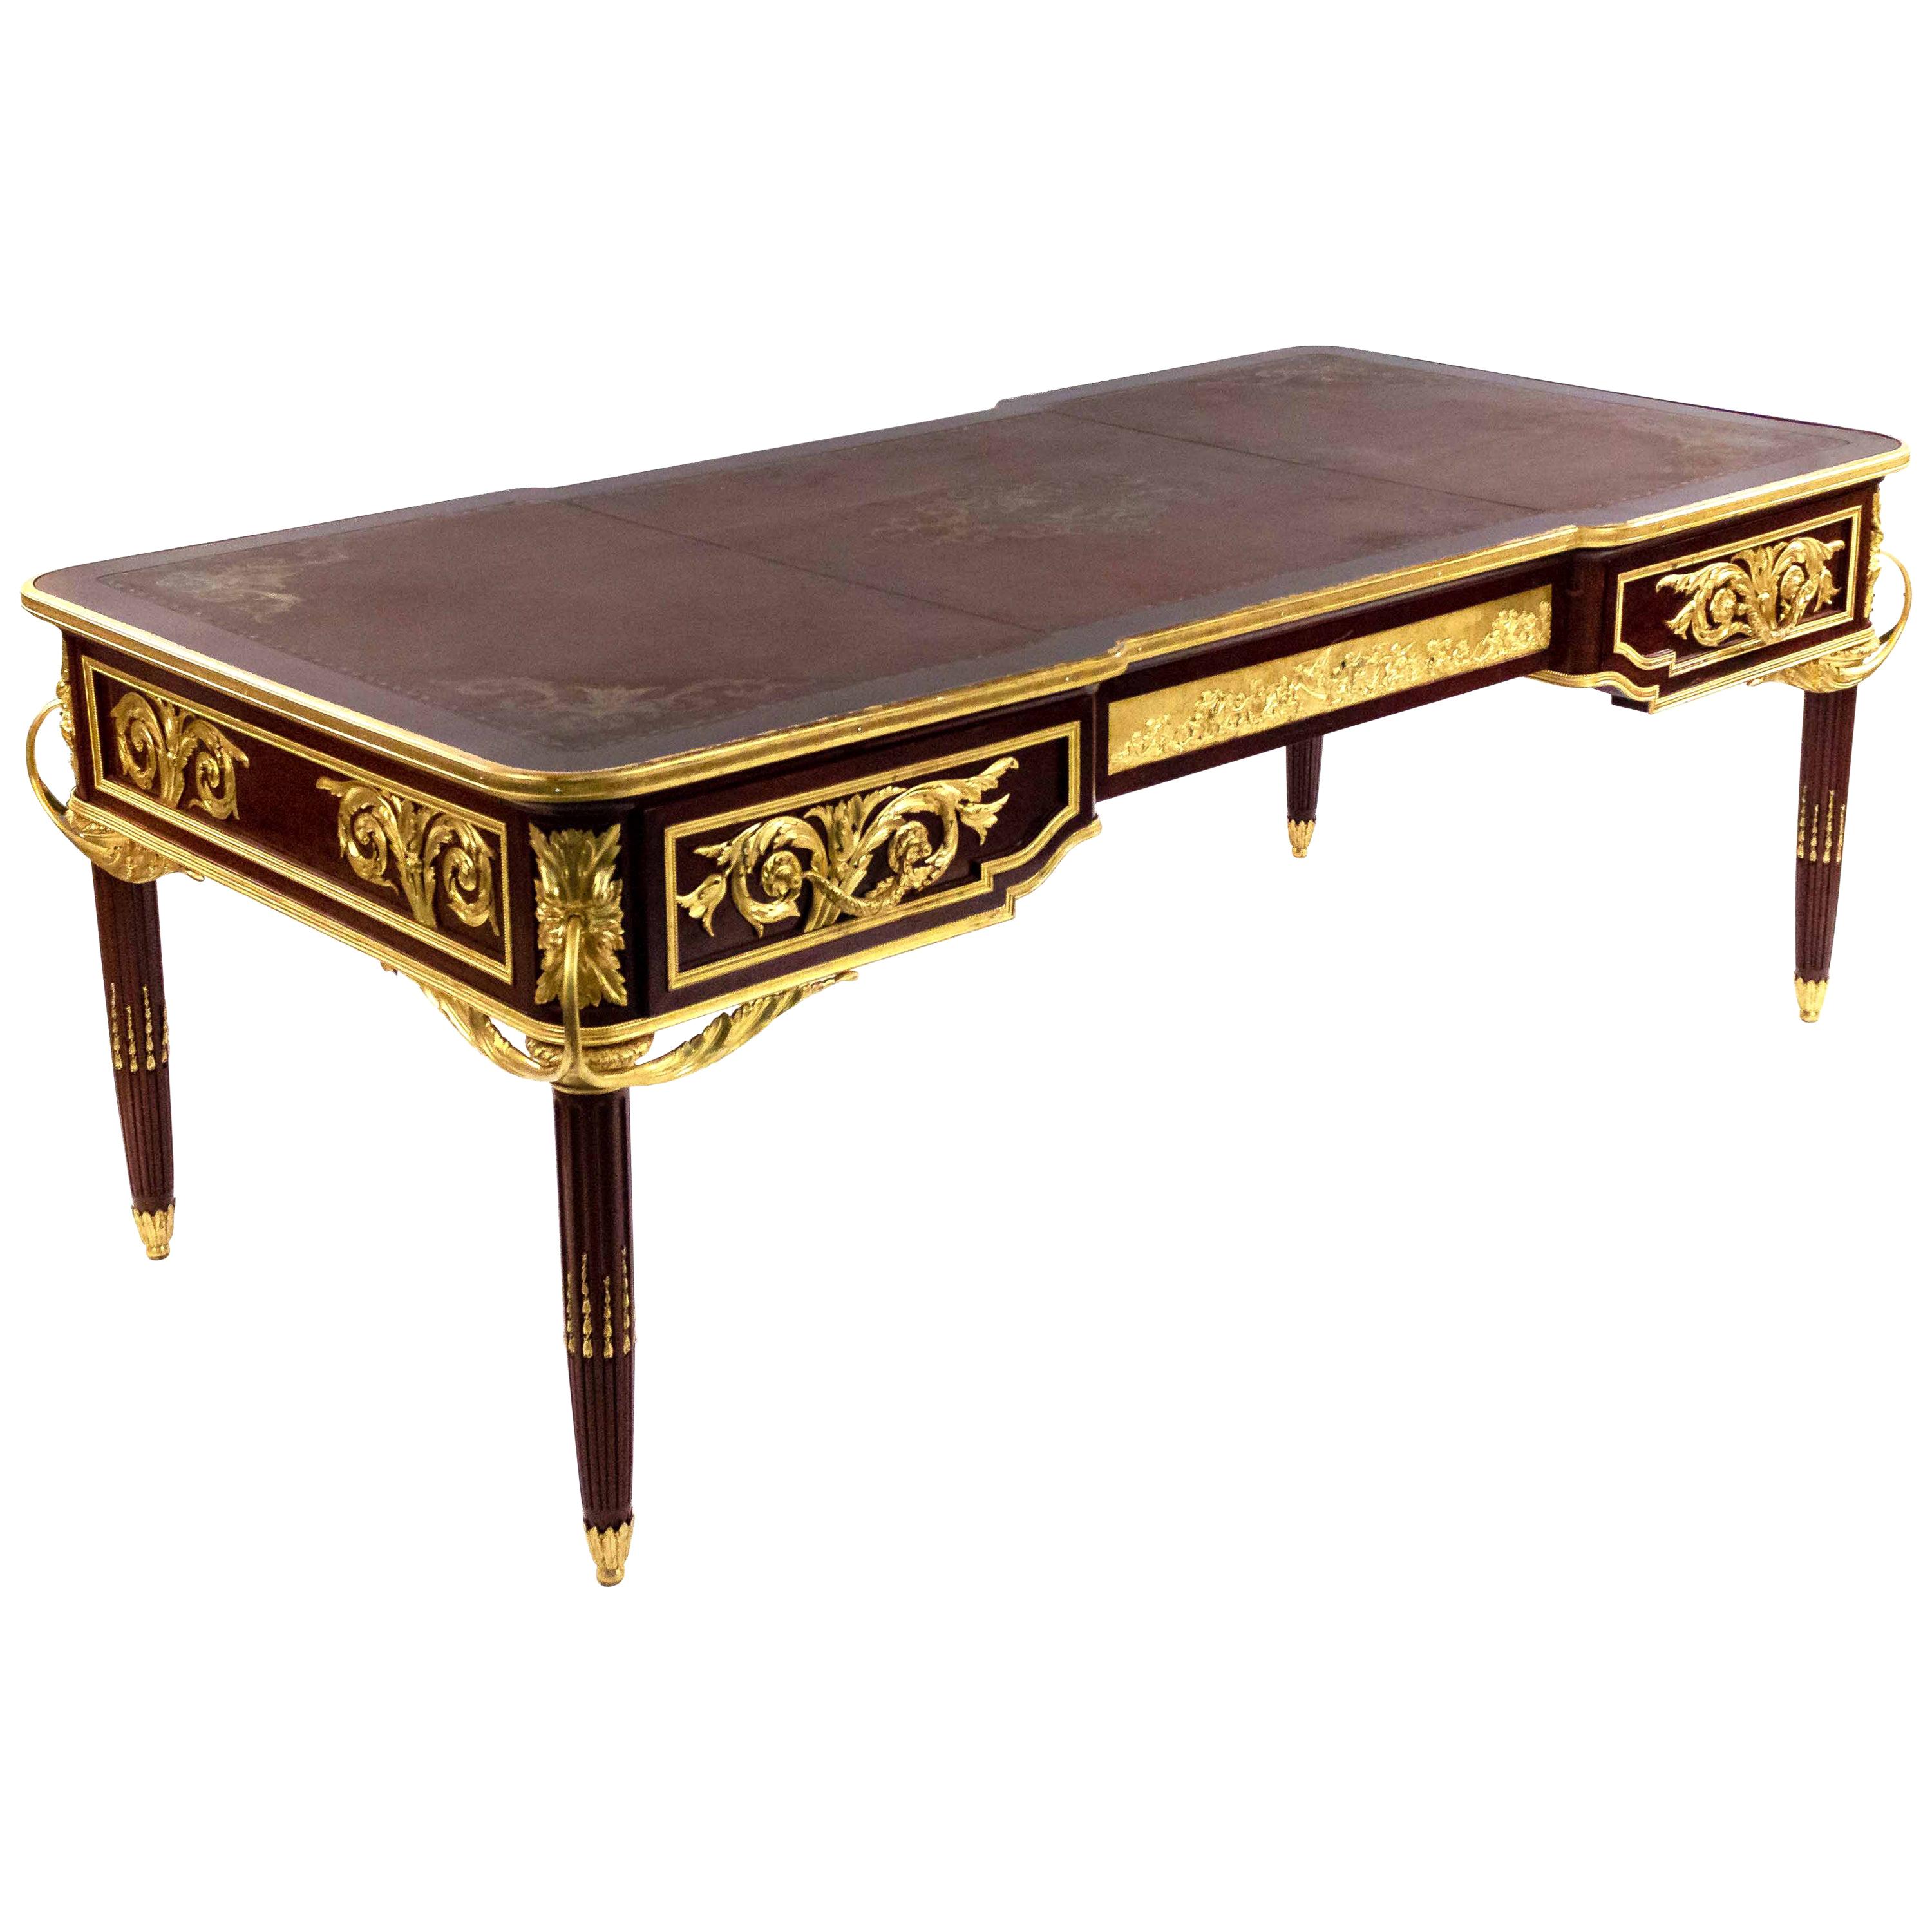 Bureau plat de style Louis XVI monté sur bronze doré